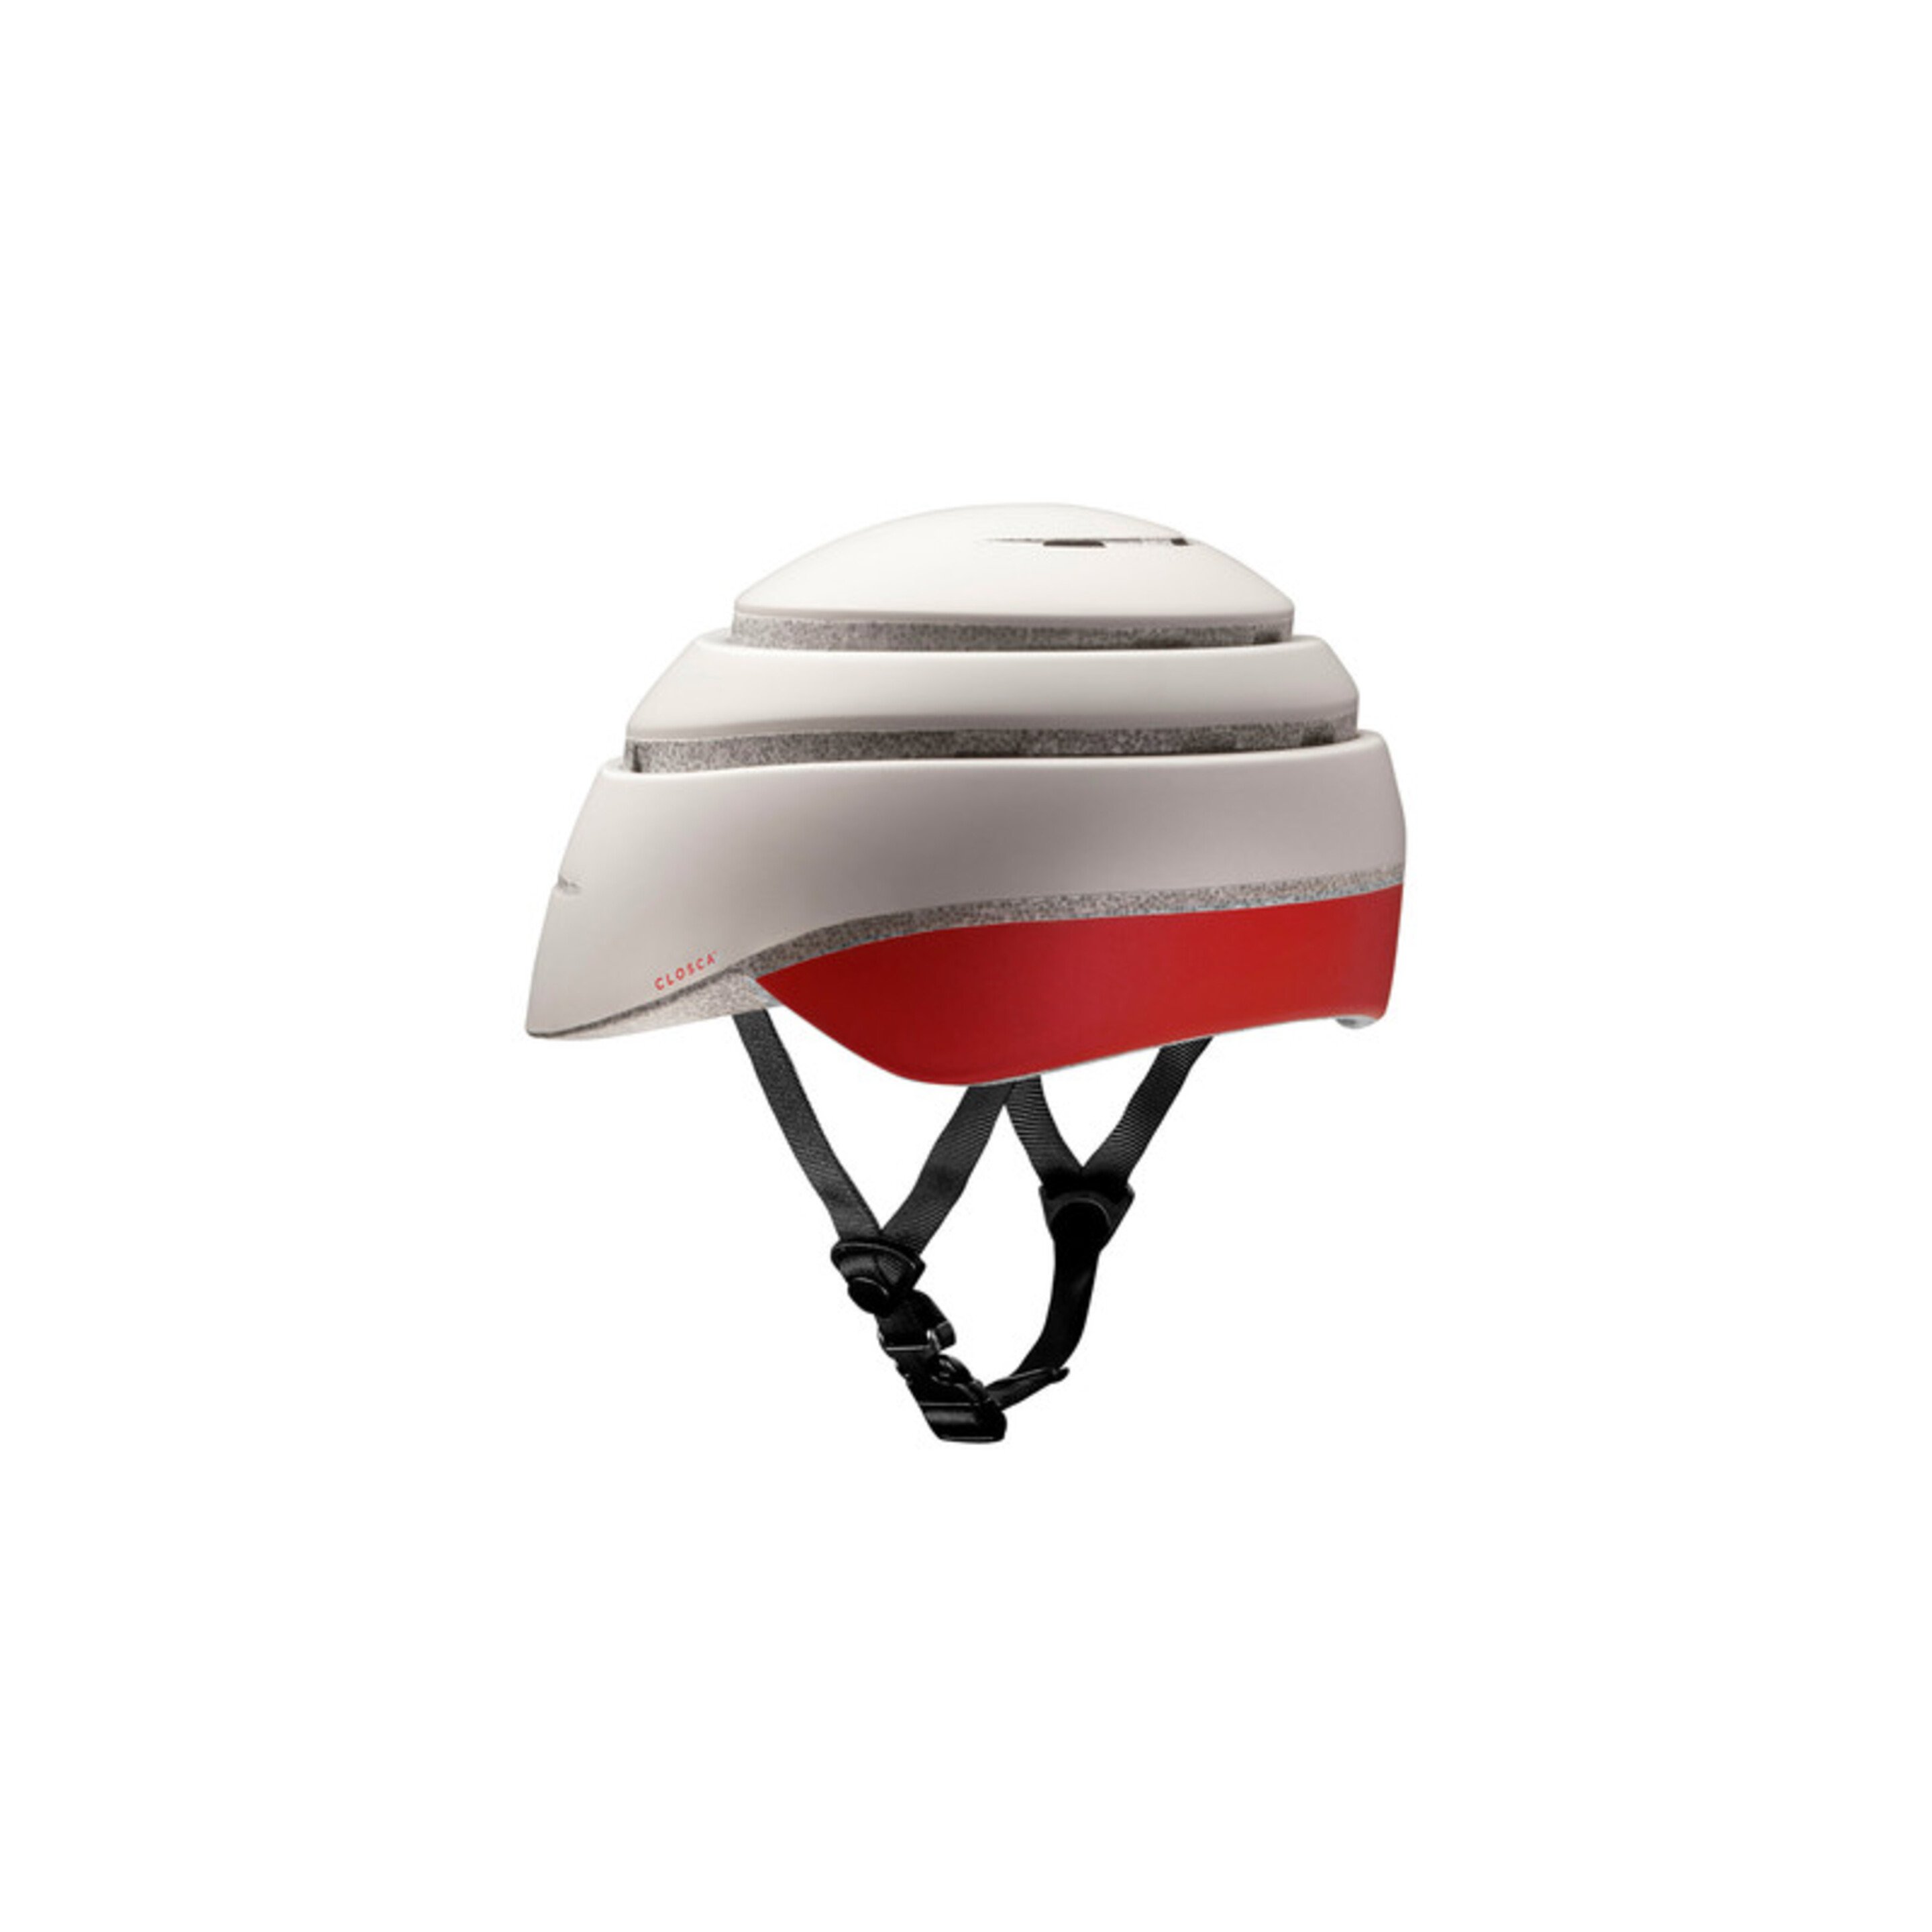 Casco De Bicicleta Plegable Closca Pearl - Blanco/Rojo - Seguro, Plegable Y Estilo Urbano.  MKP